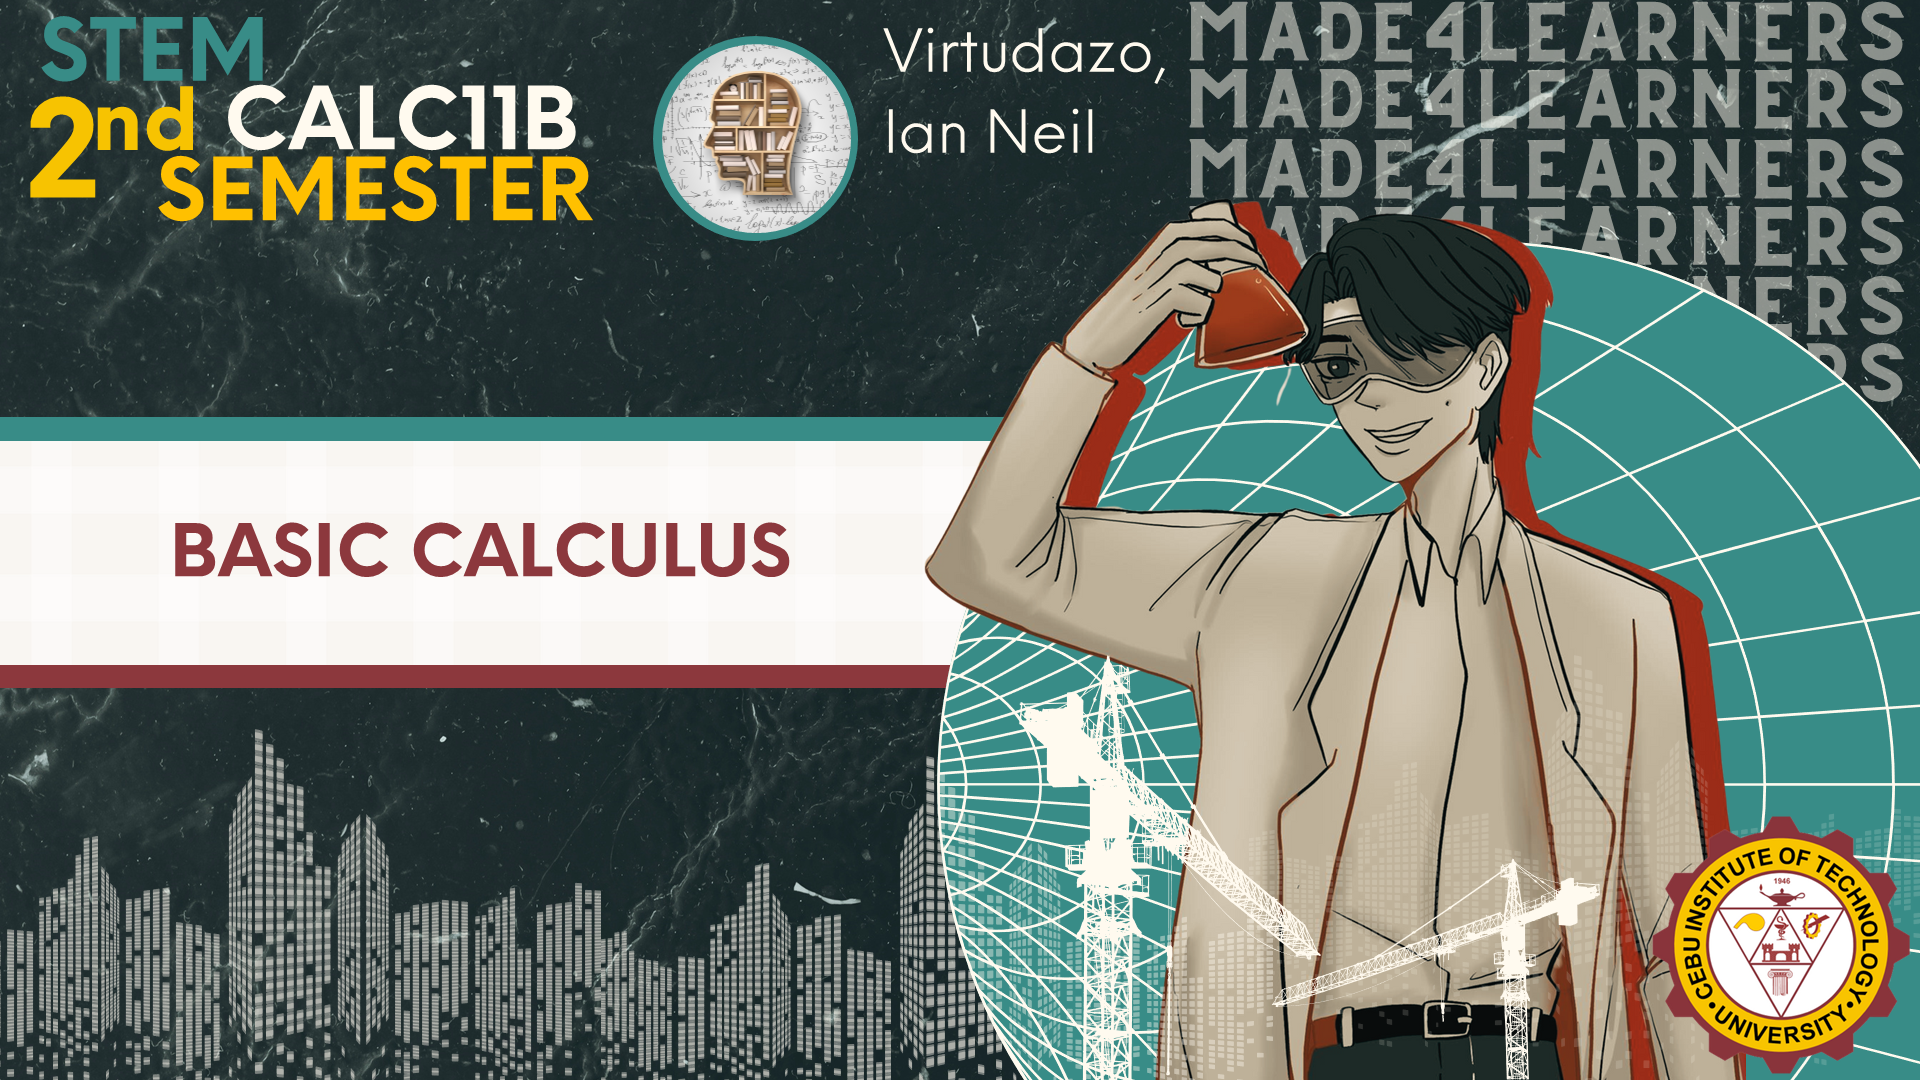 CALC11B: Basic Calculus (Virtudazo)